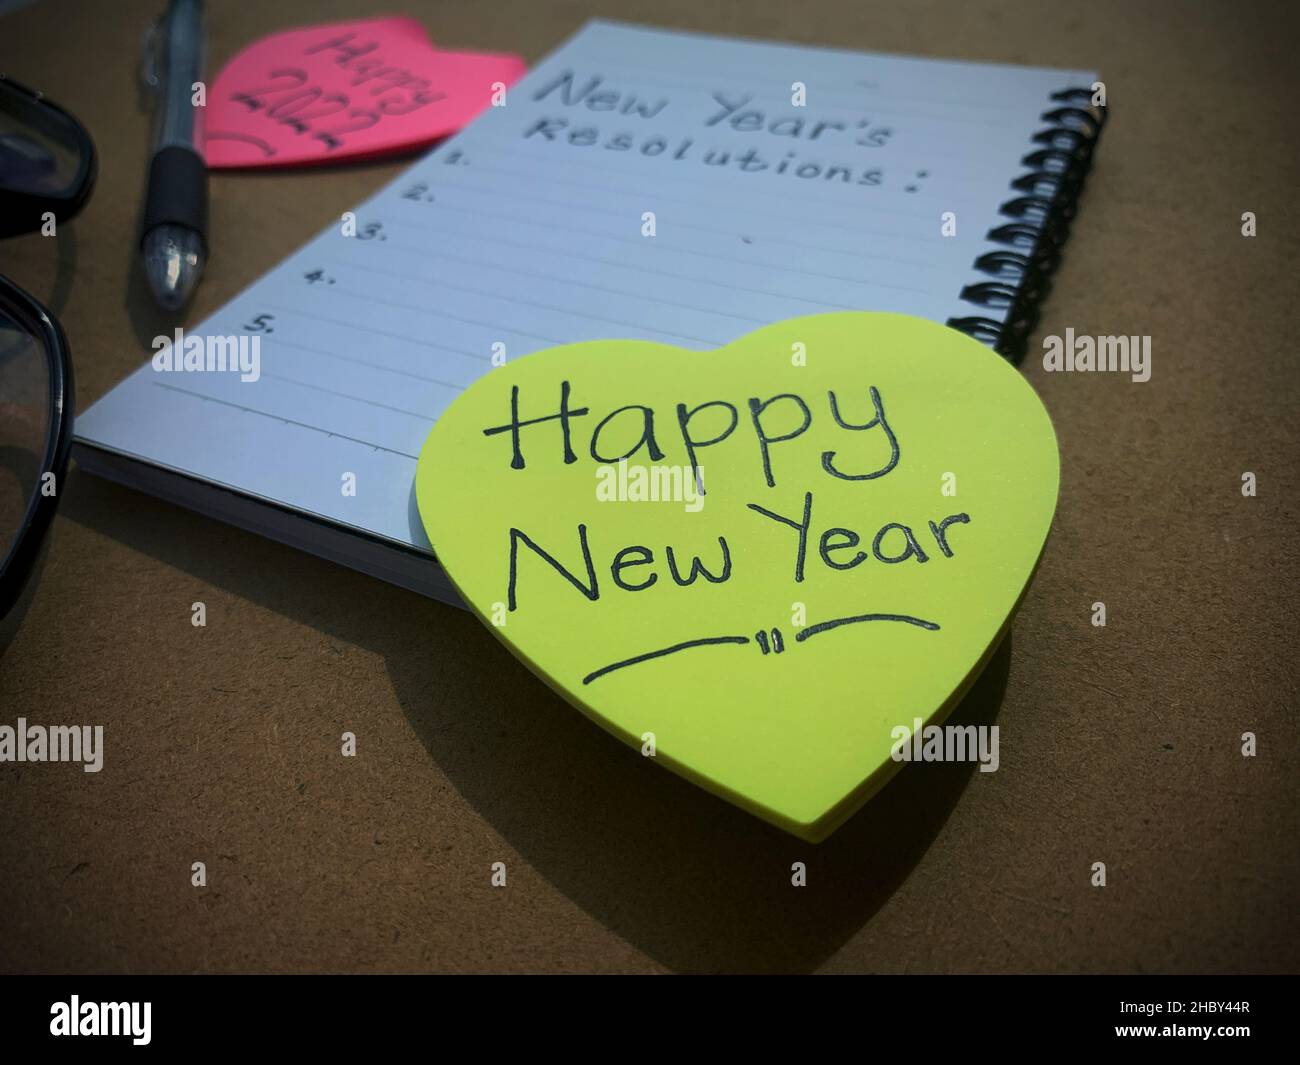 Schöne Wünsche auf Haftnotizen mit Vorsätzen für das neue Jahr auf einem Notizblock. Stockfoto